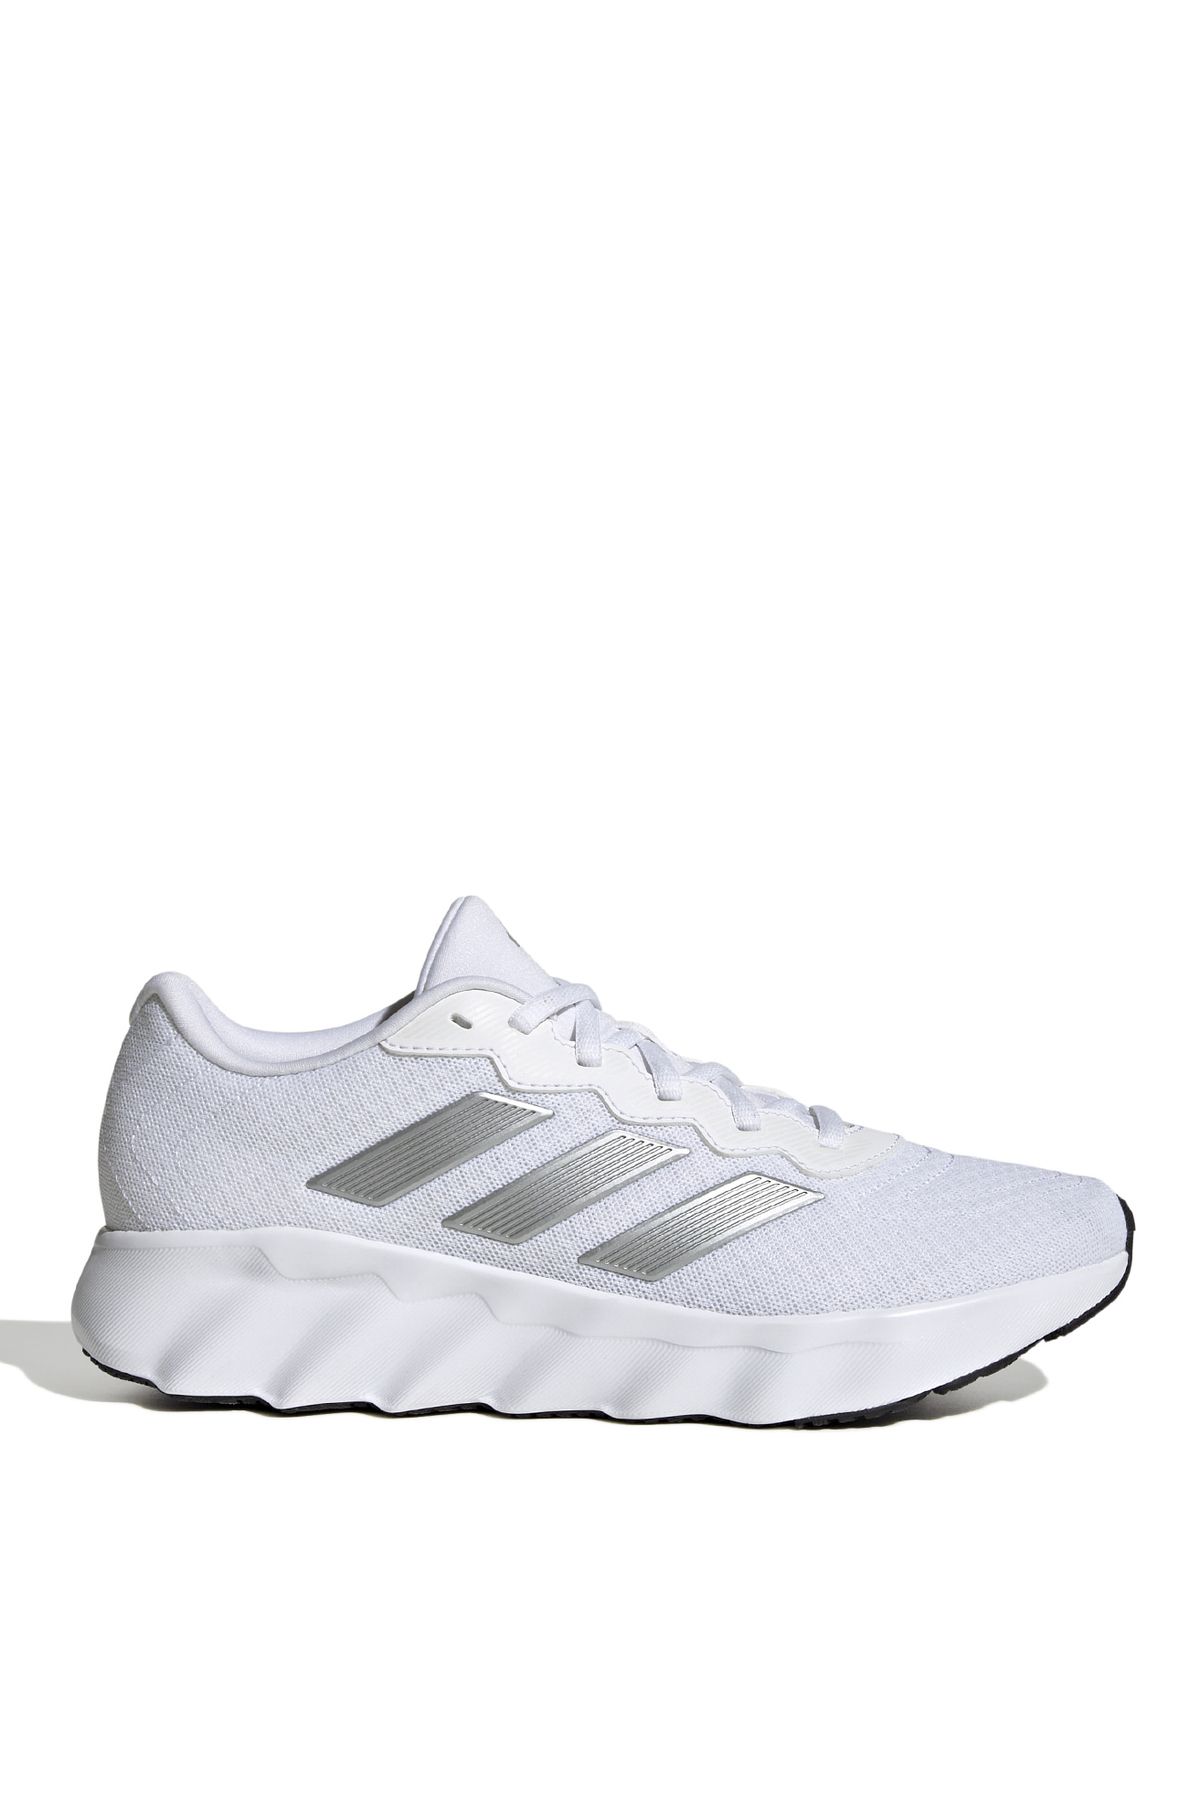 adidas Beyaz Kadın Koşu Ayakkabısı ID5257 ADIDAS